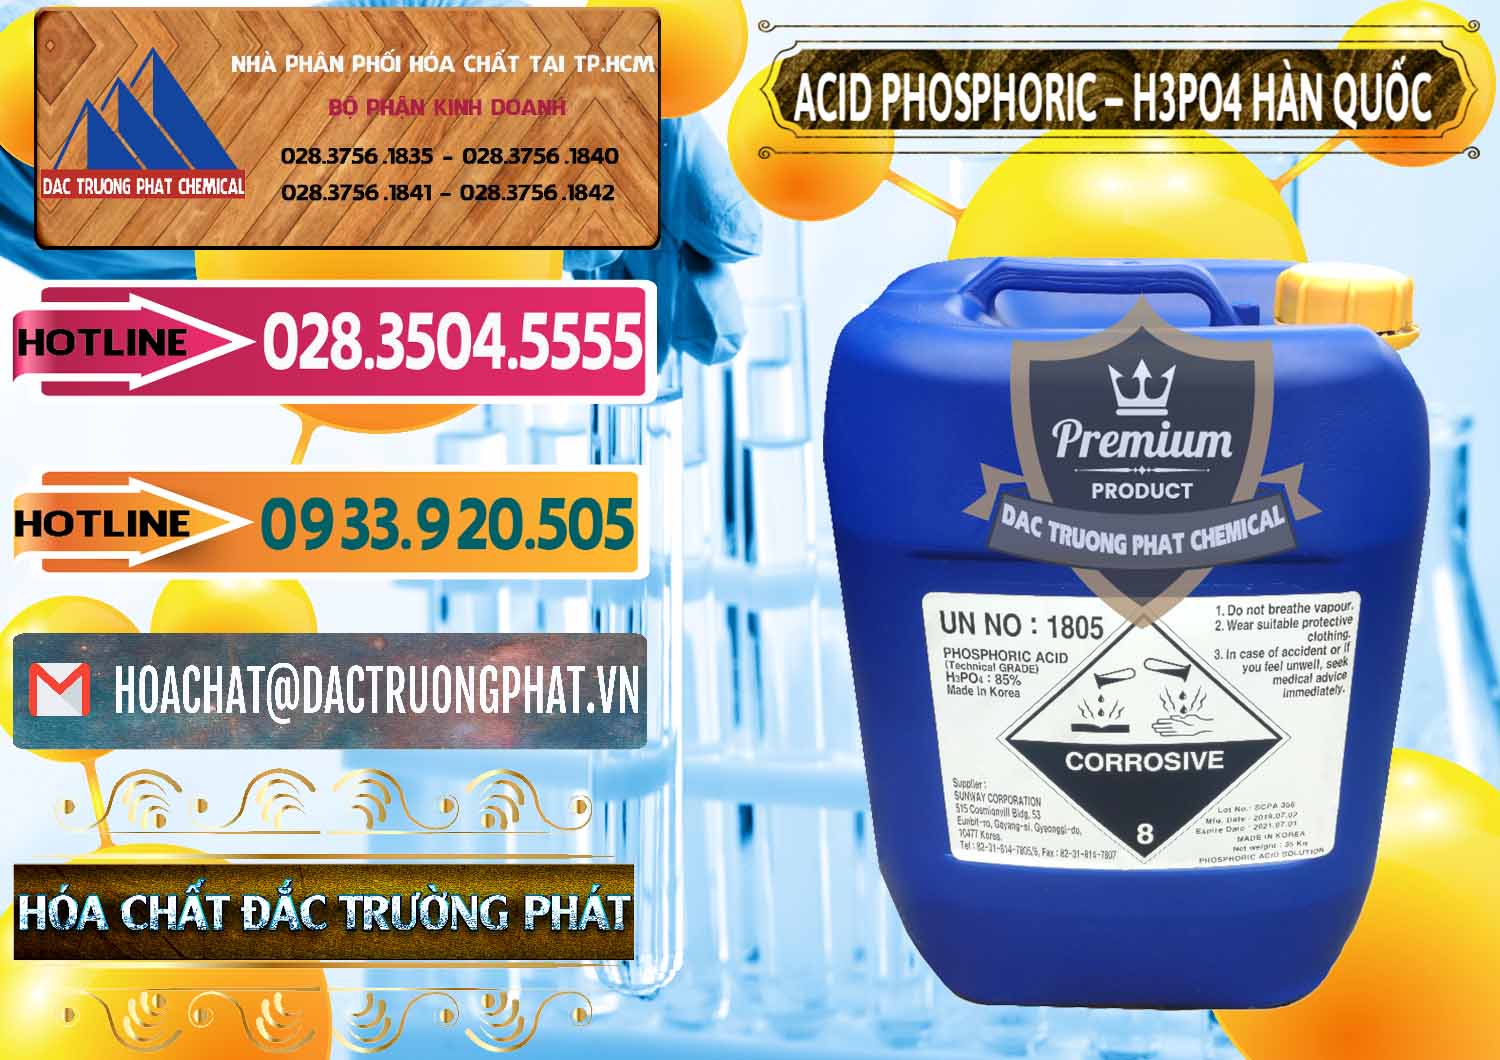 Nơi chuyên bán và cung cấp Acid Phosphoric – H3PO4 85% Can Xanh Hàn Quốc Korea - 0016 - Nhà cung cấp _ nhập khẩu hóa chất tại TP.HCM - dactruongphat.vn